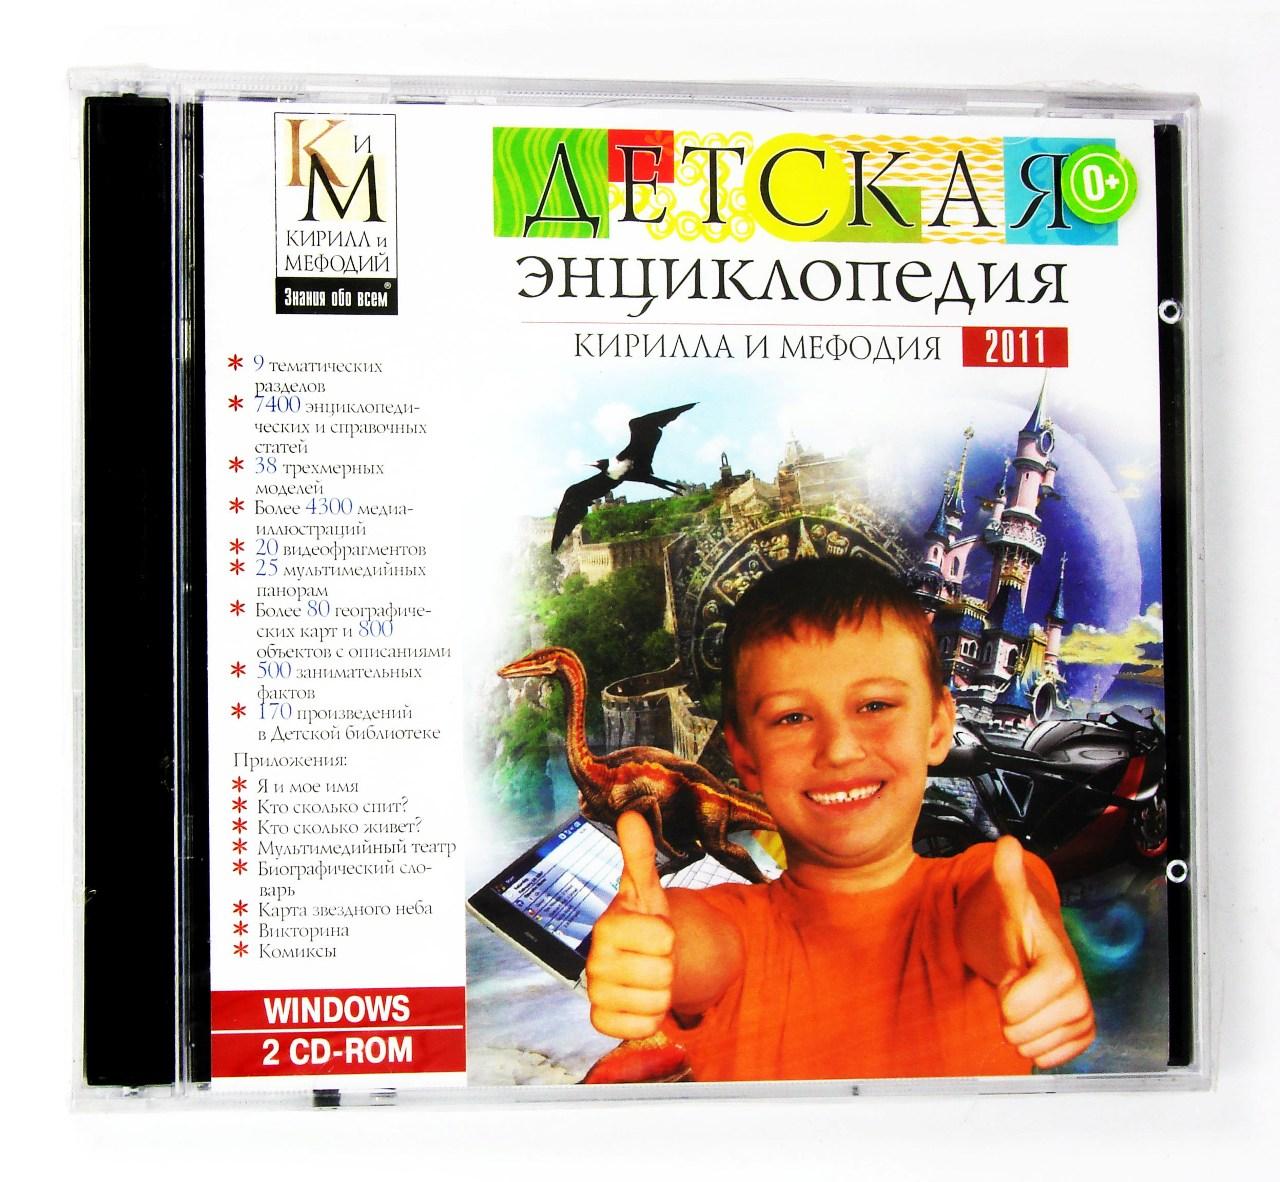 Компьютерный компакт-диск Детская энциклопедия КиМ 2011 (ПК), фирма "Кирилл и Мефодий", 2CD